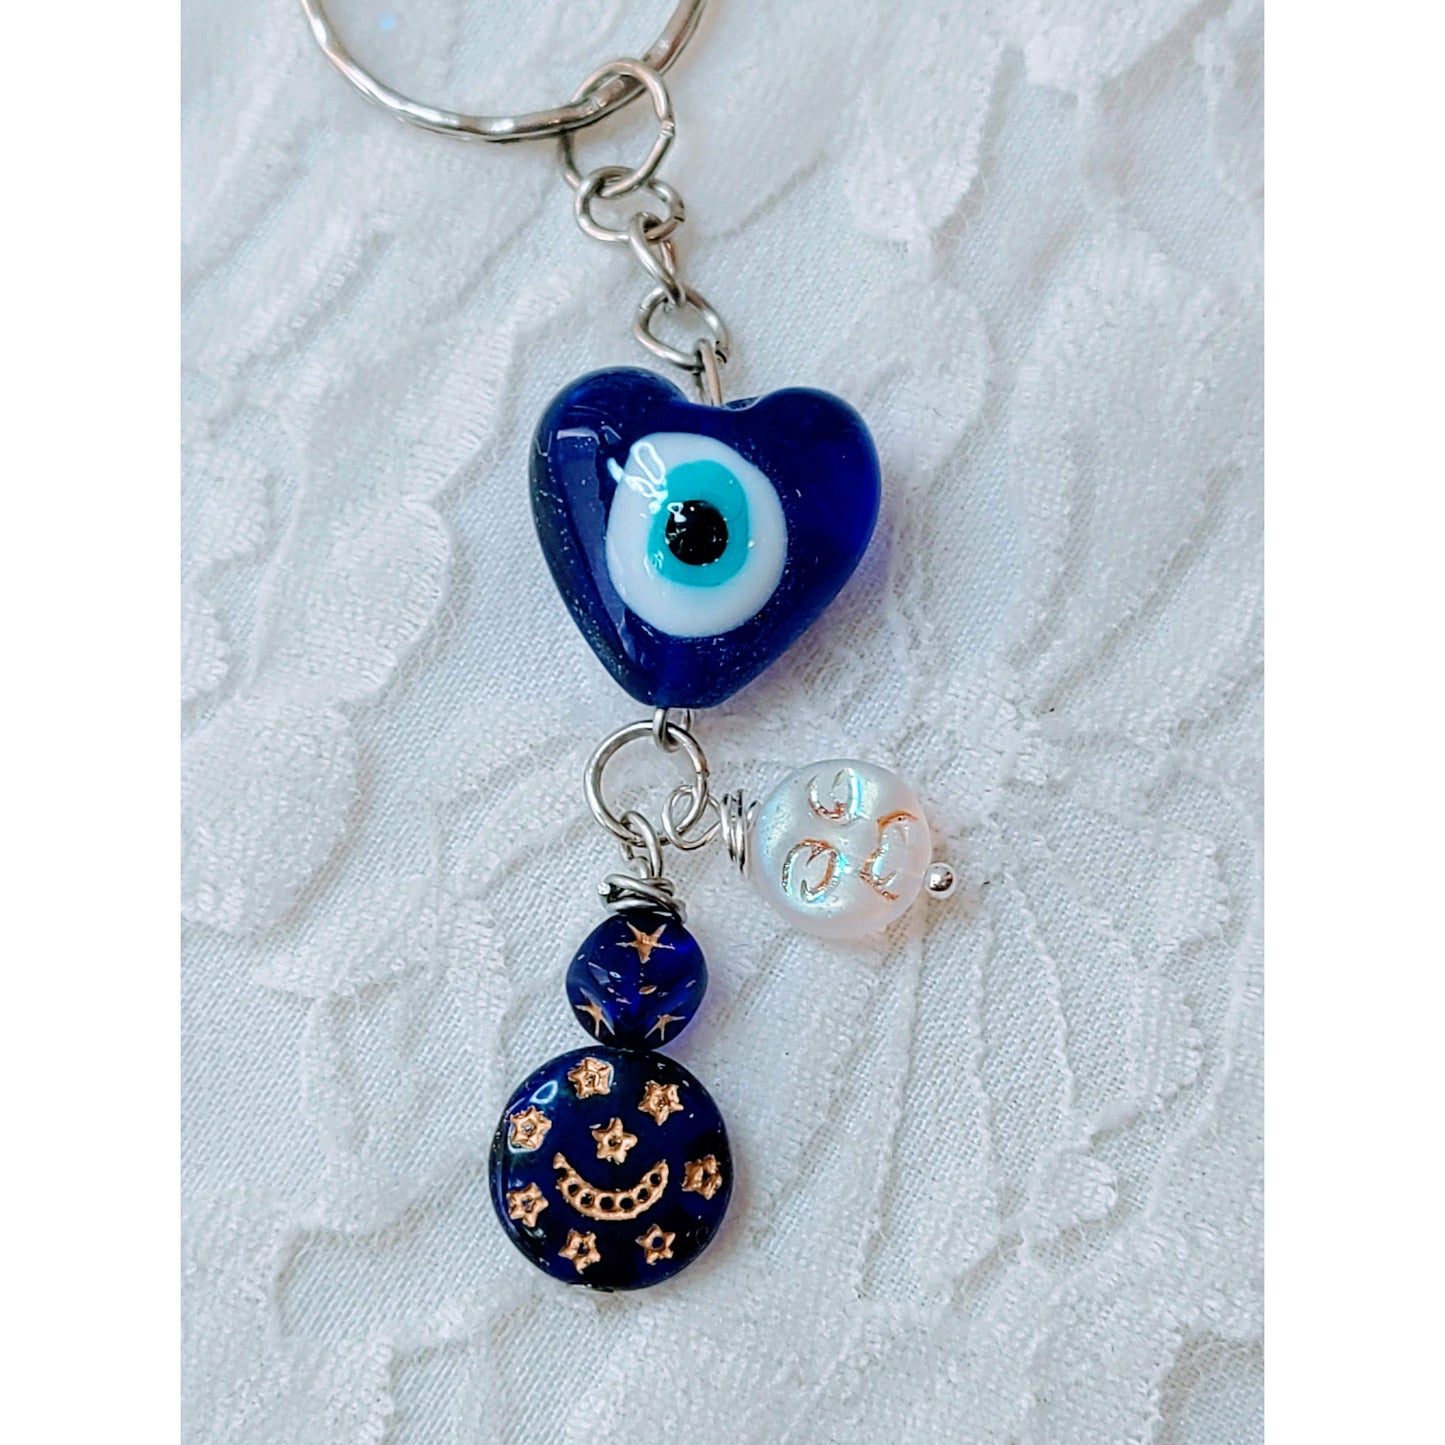 One (1) Evil Eye Amulet Keychain ~ Hamsa Hand, Hamesh, Hamesh Hand, Khamsa, and/or Hand of Fatima ~ Evil Eye Protection Amulet